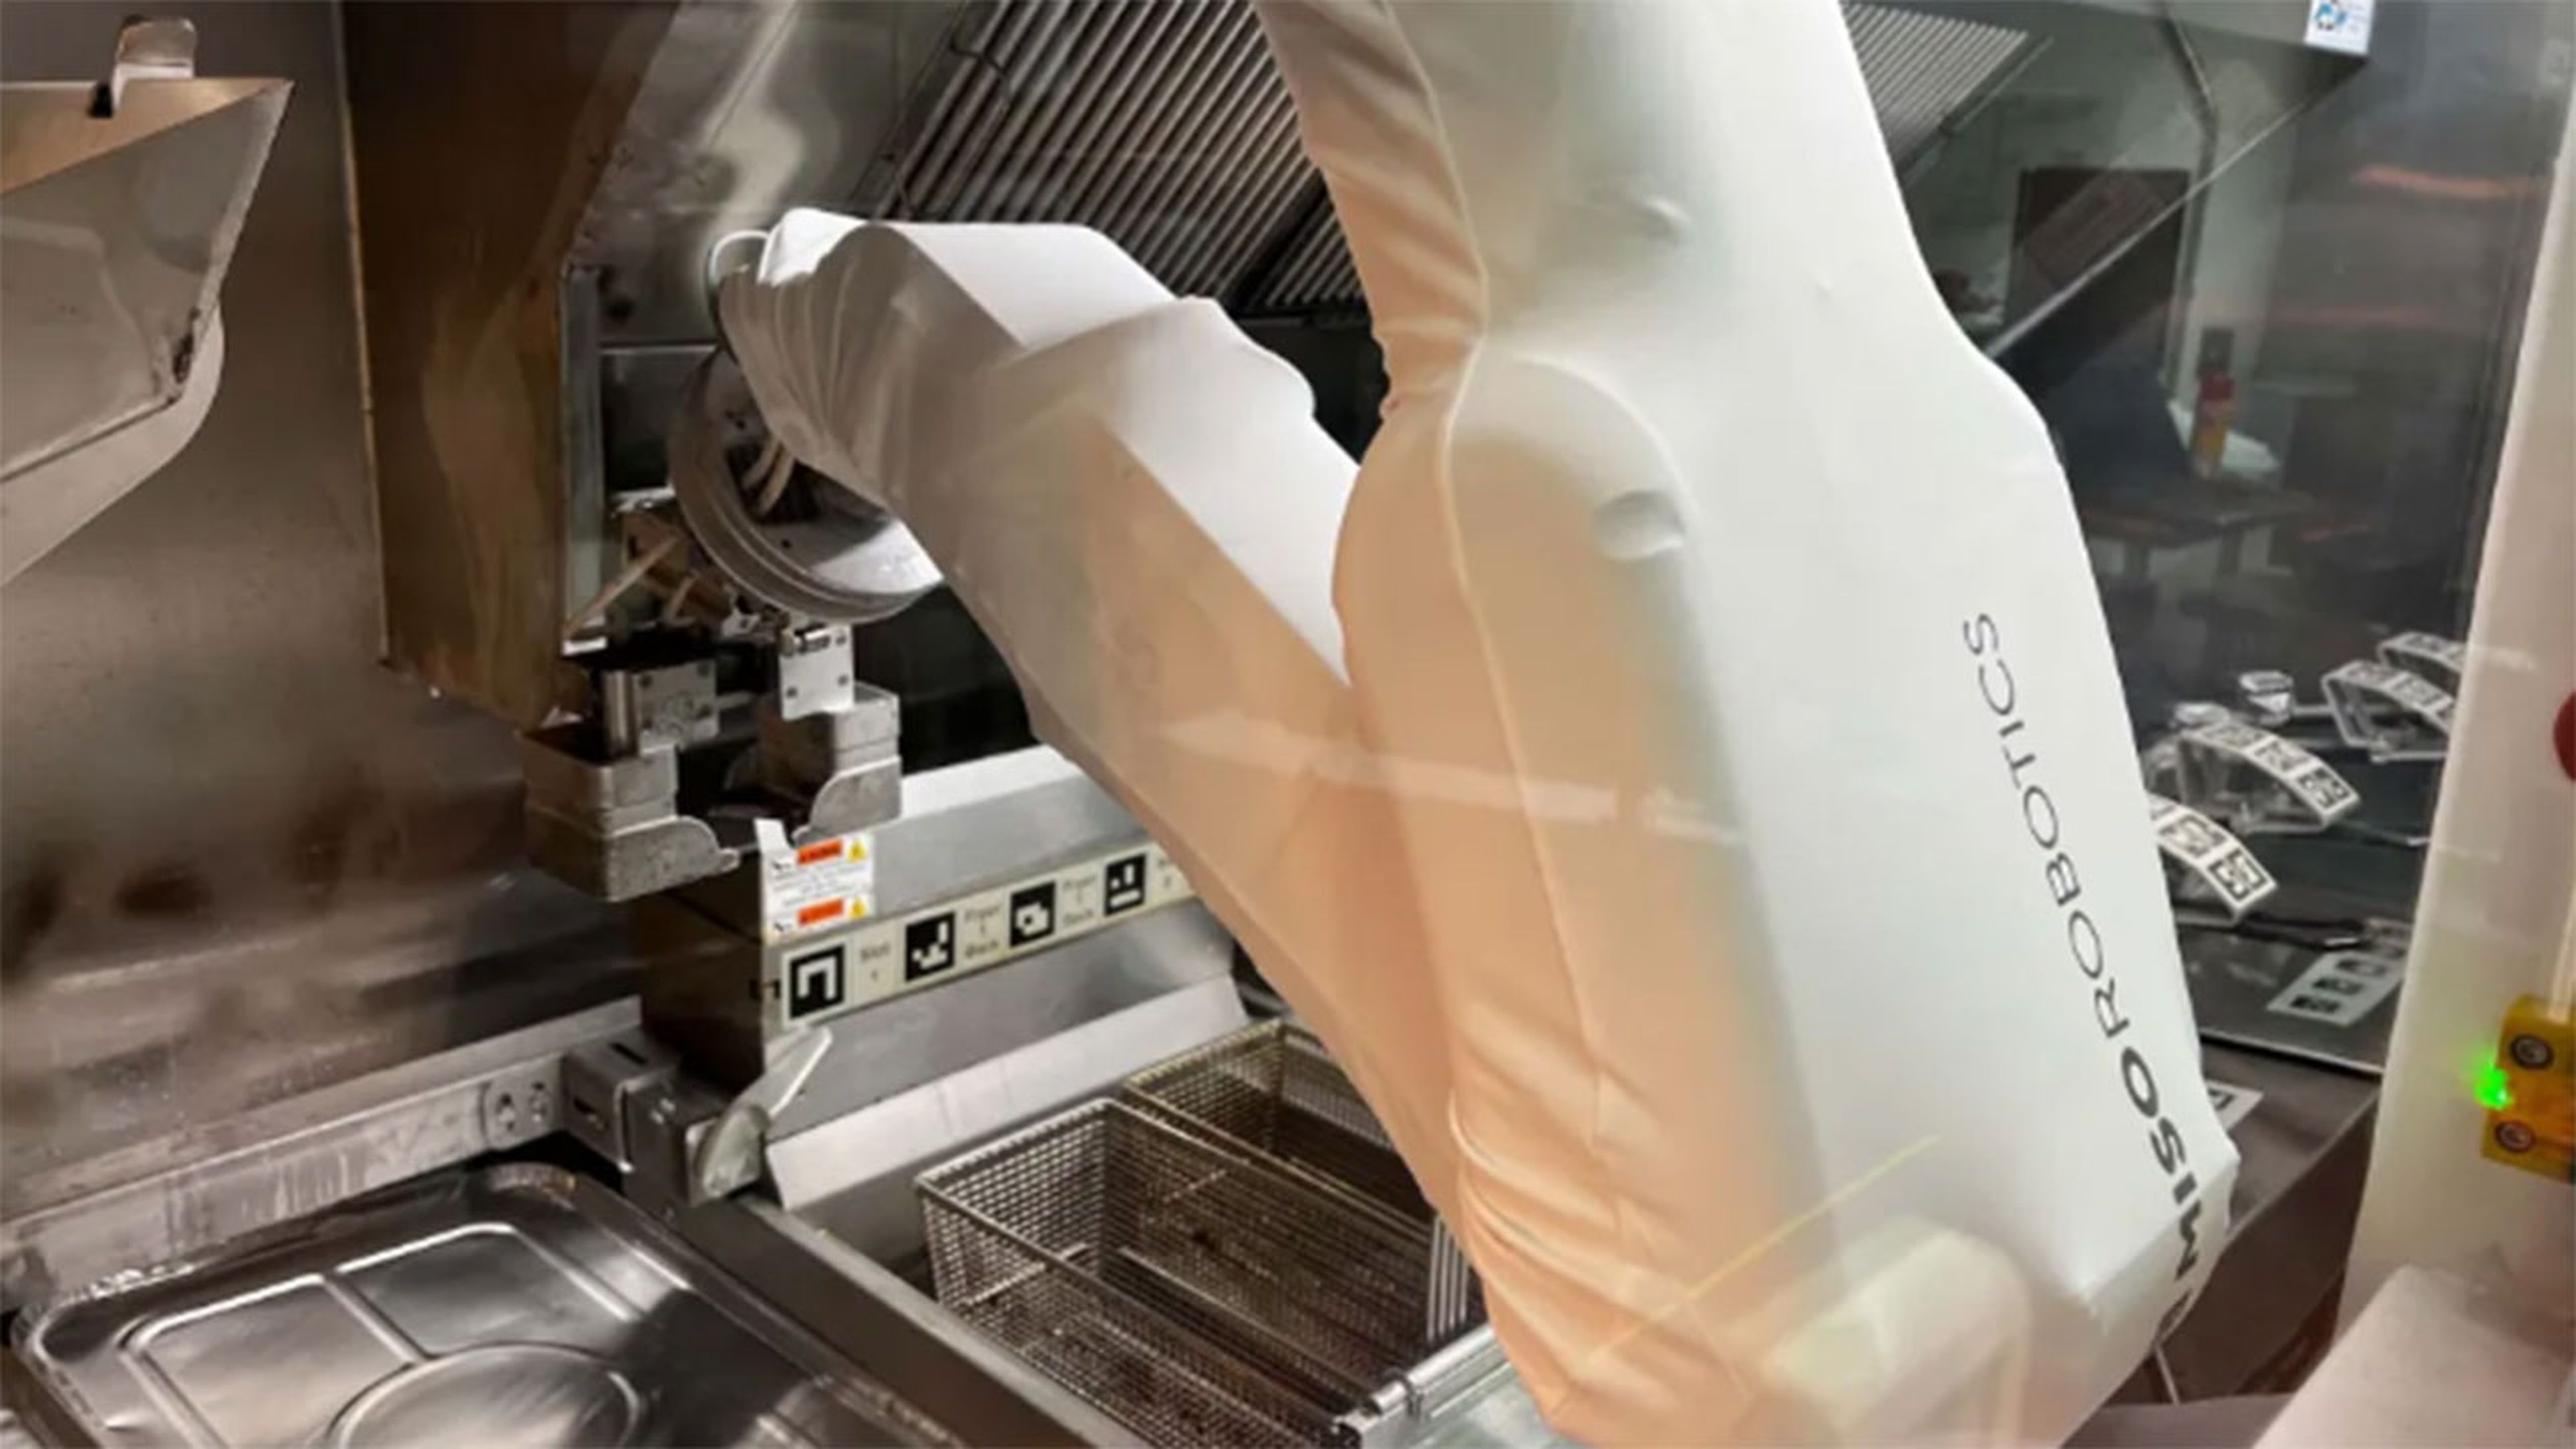 Nuevo robot que pretende sustituir a los humanos en las cocinas de la industria de comida rápida